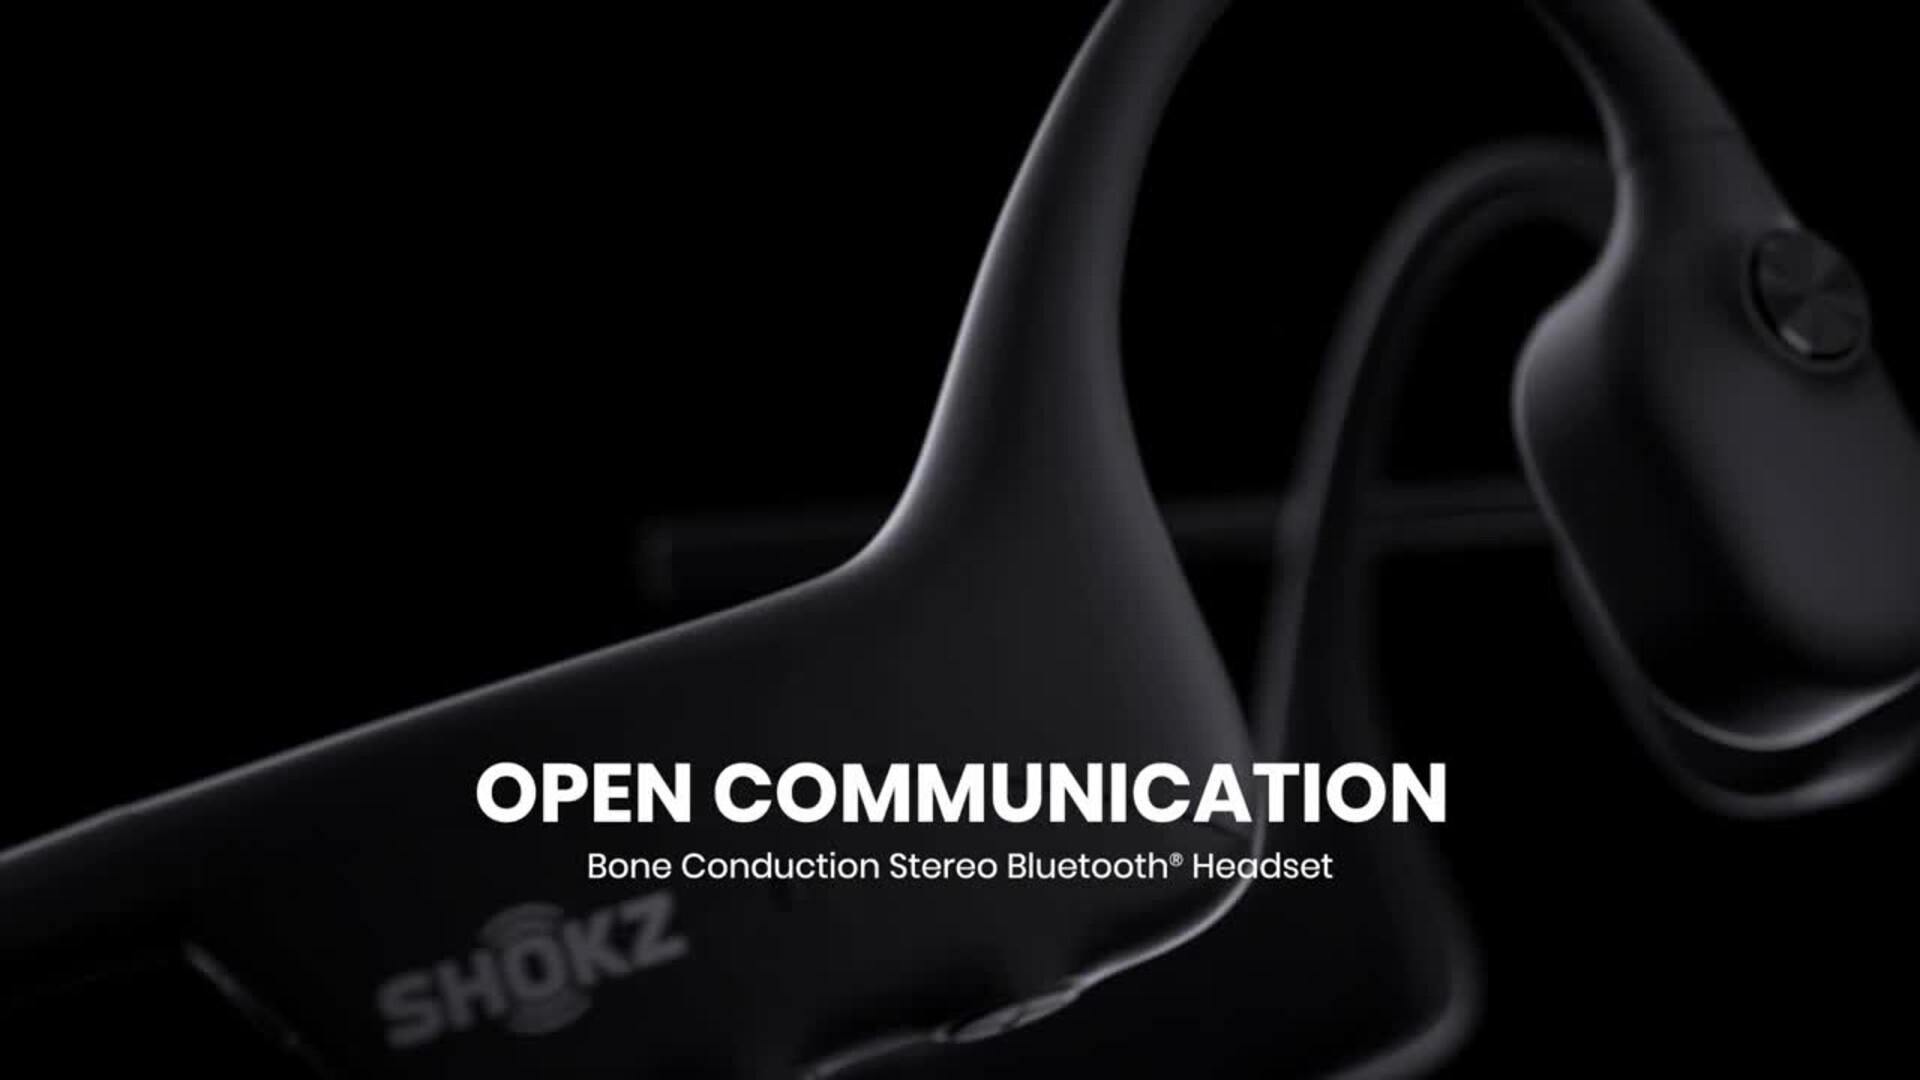 Shokz Opencomm2 UC Stereo Bone Conduction Bluetooth Wireless Headset